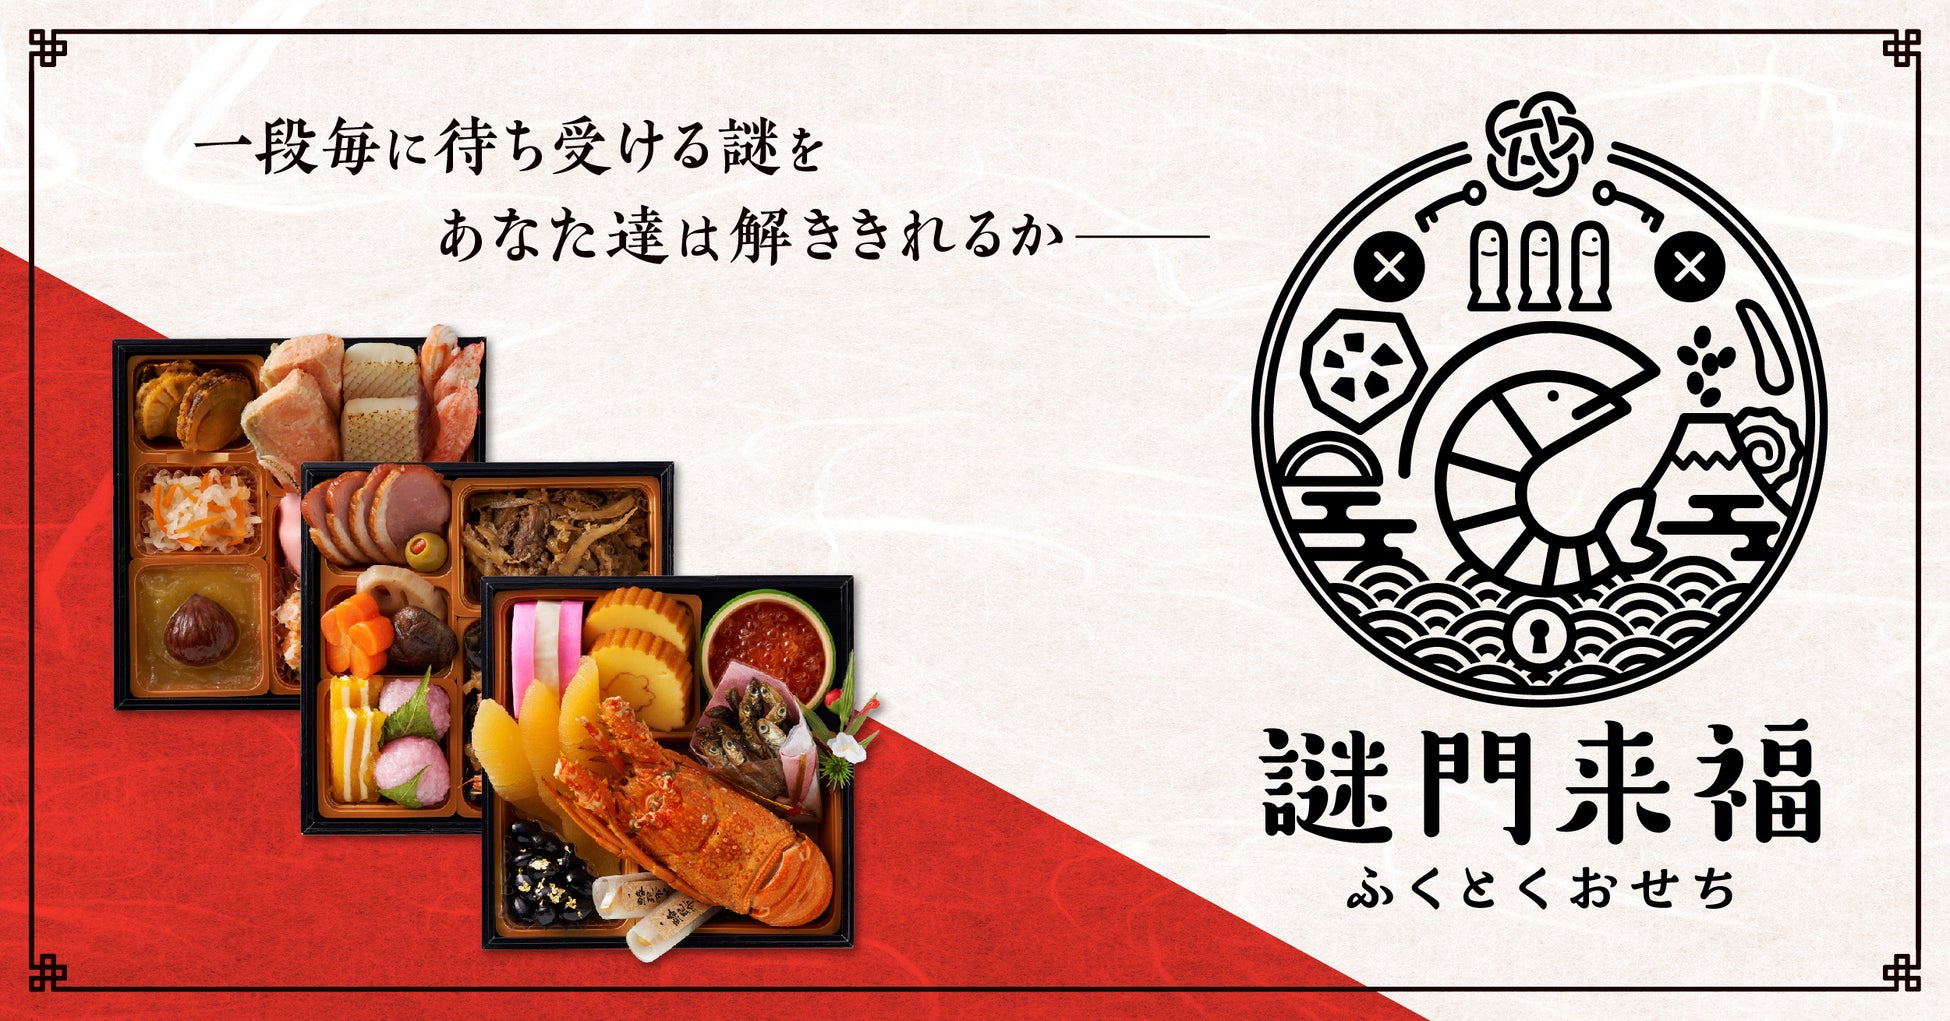 【新店】名古屋市昭和区に気軽が売りの鉄板焼き「肉級」がオープンします。